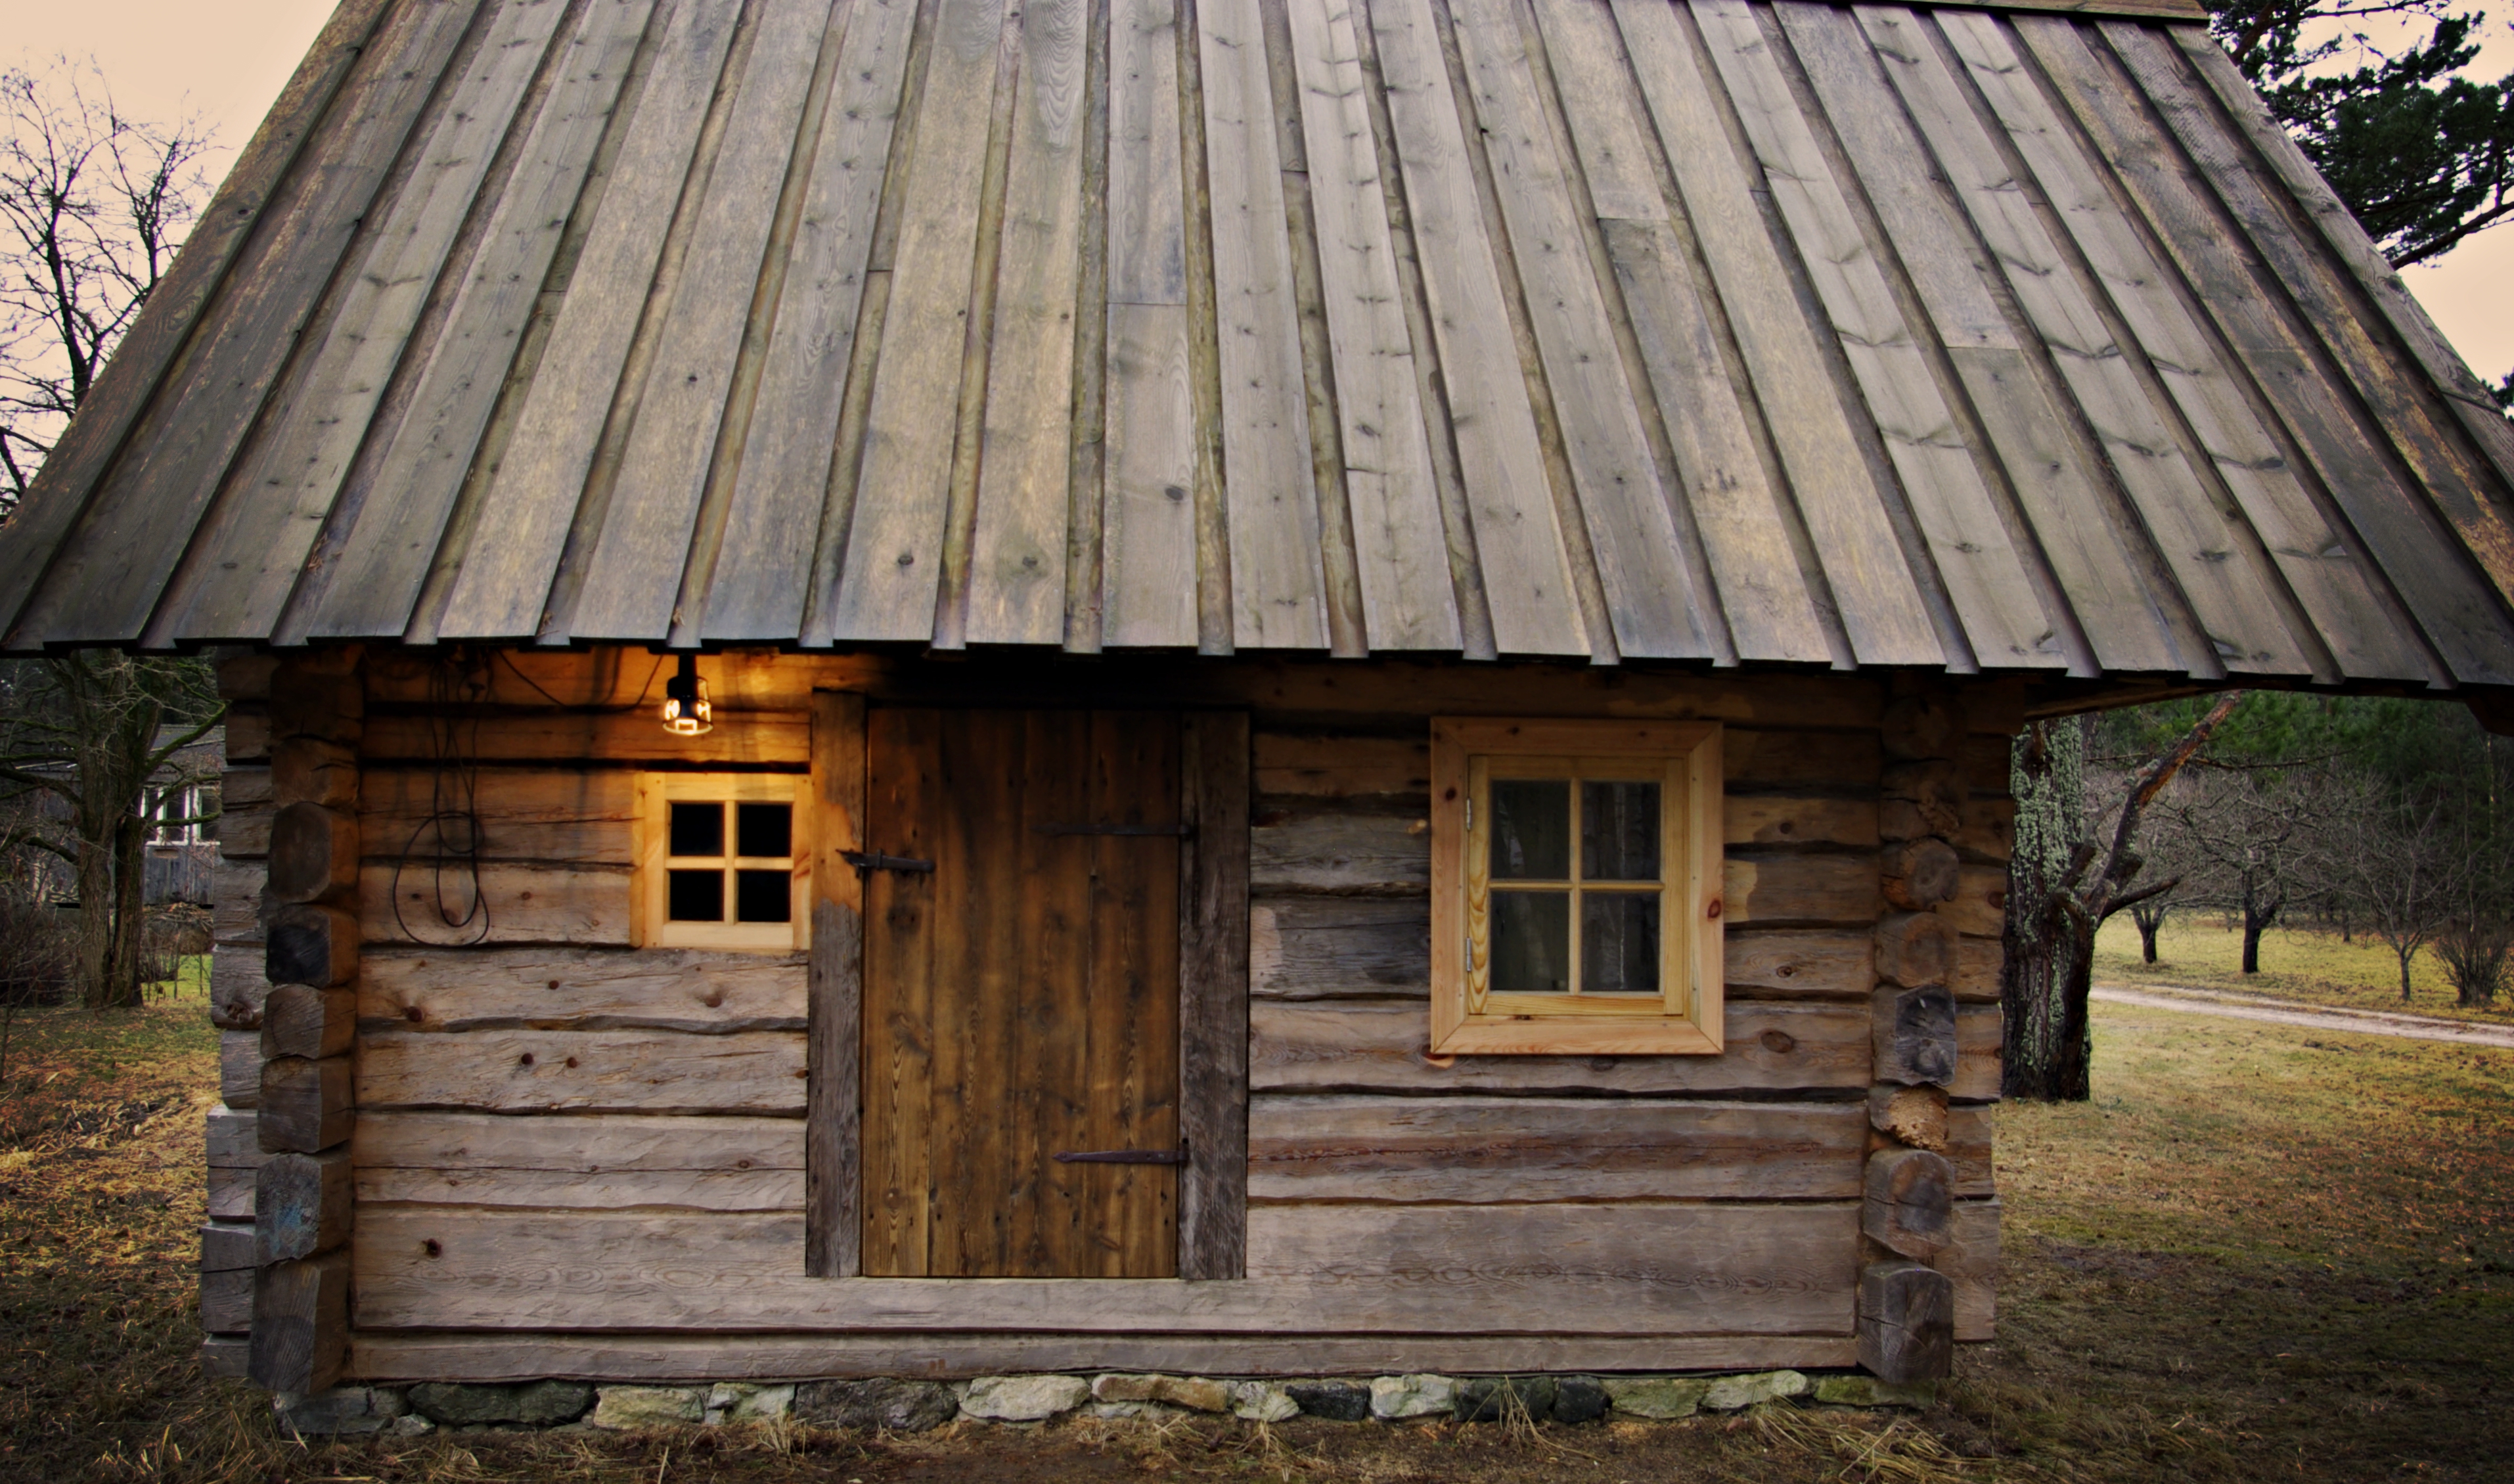 eesti traditsioonid, suitsusaun, palksaun, traditsiooniline käsitöö